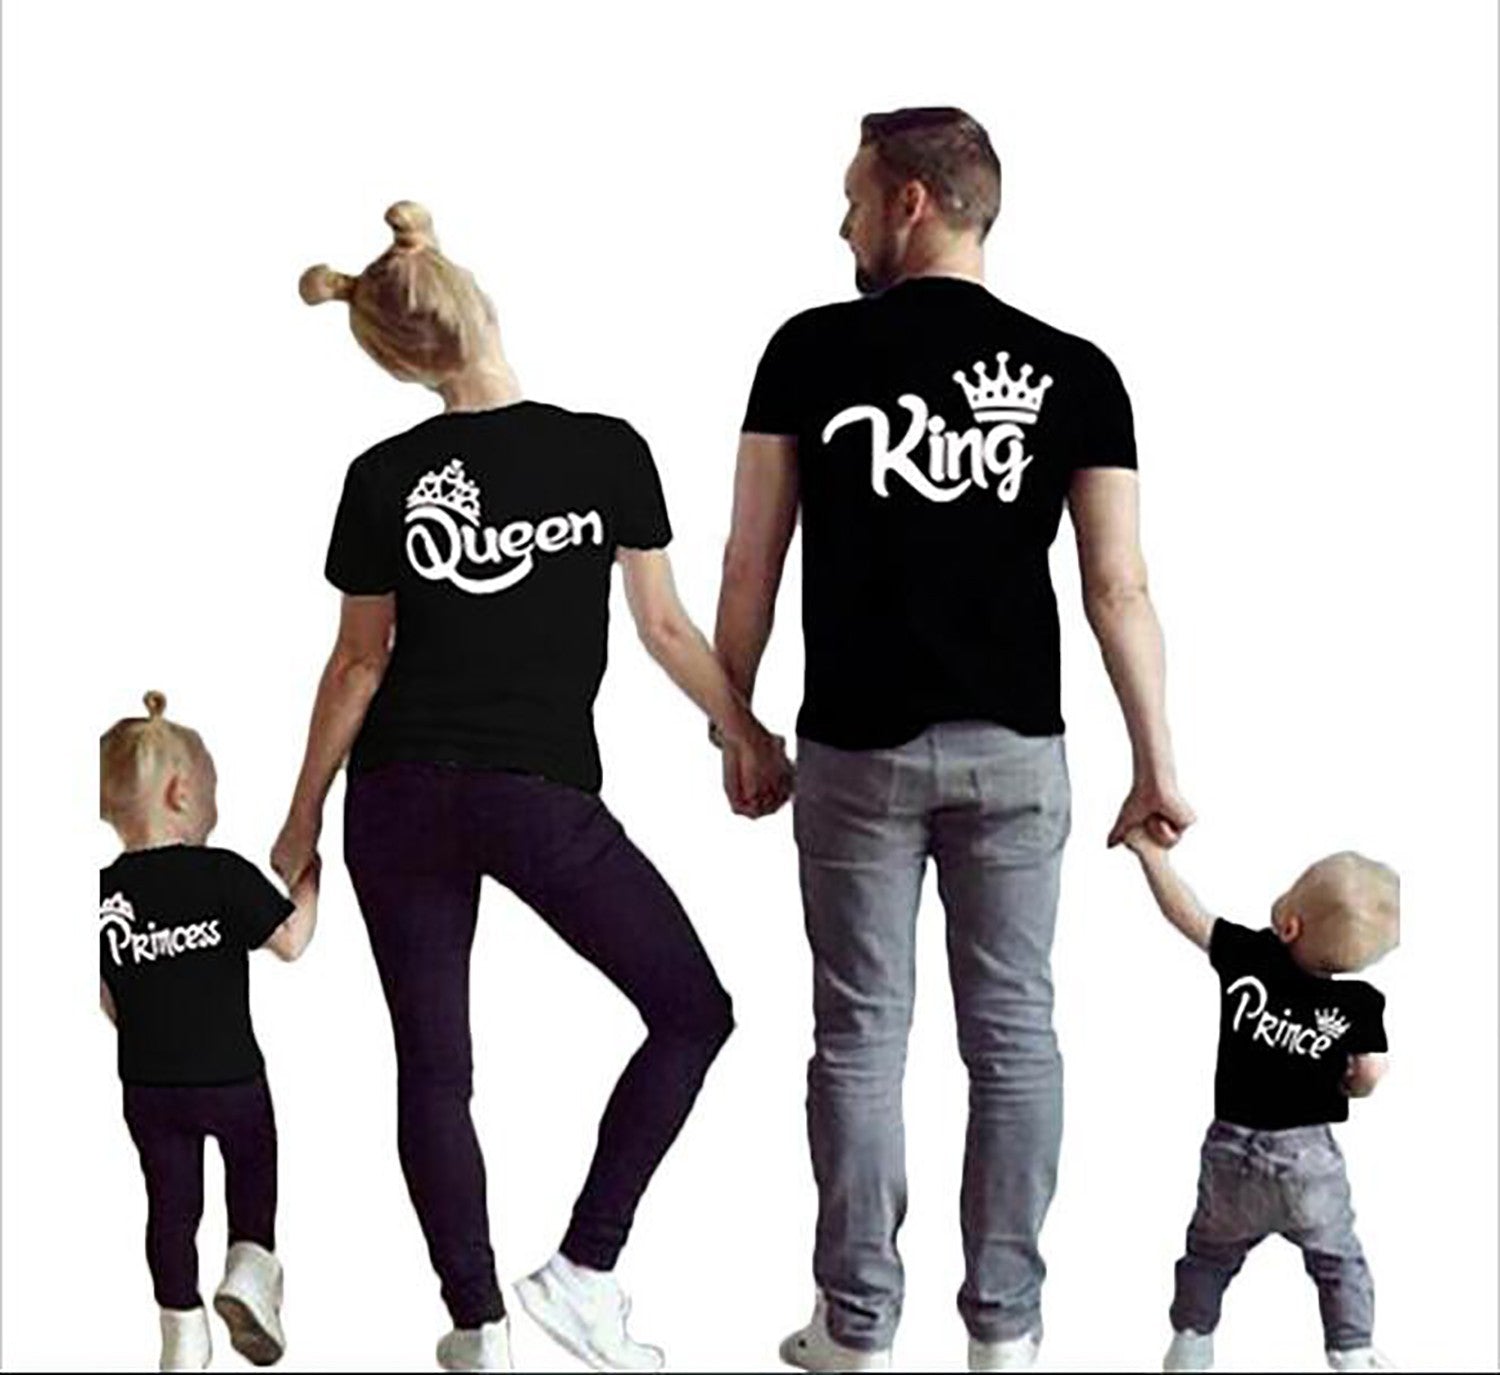 Camiseta para toda familia igual mami, papi, niño y niña, un regalo original